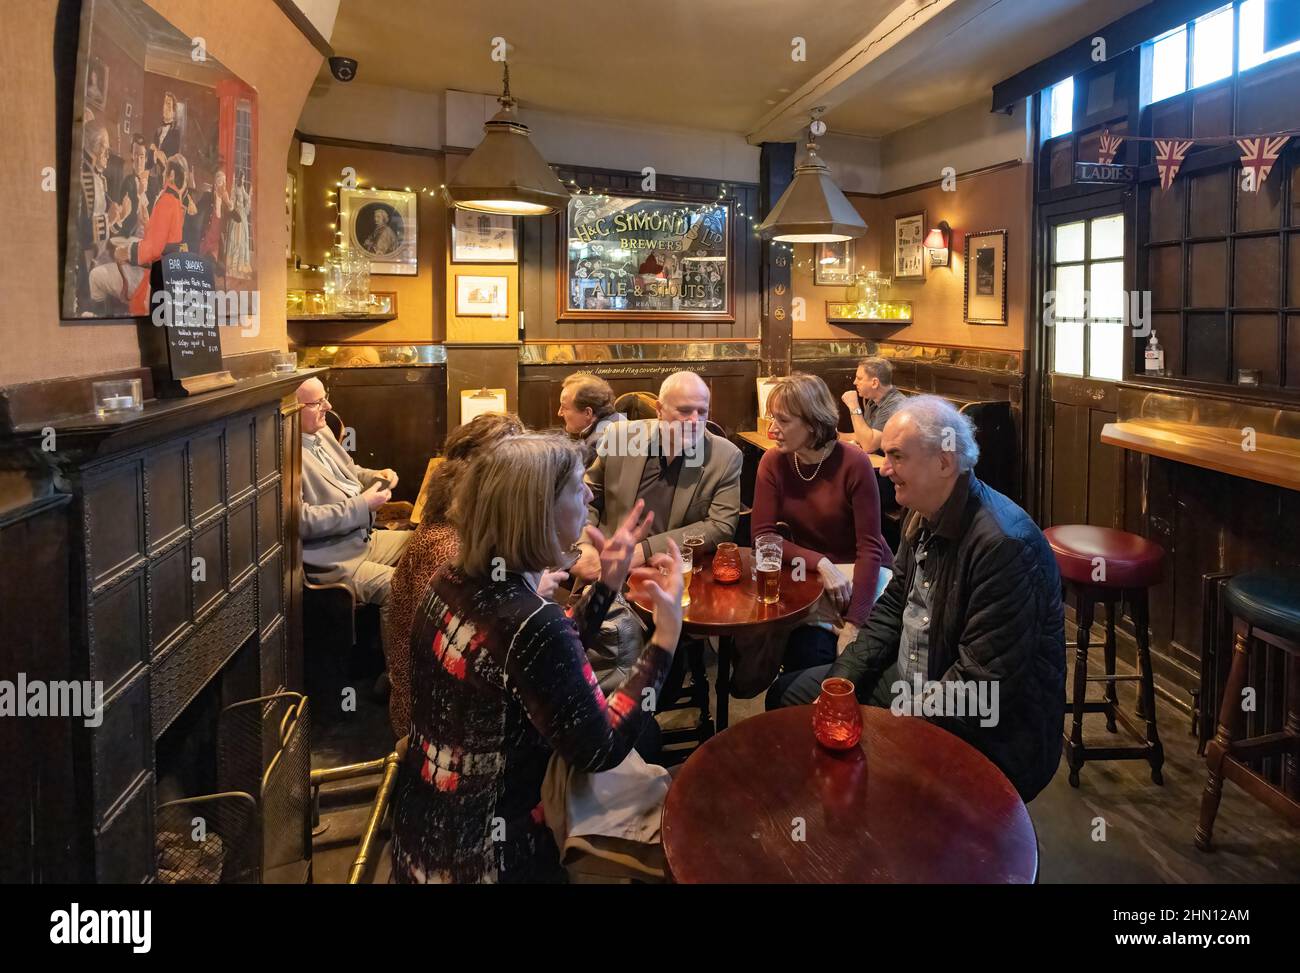 UK Pub Interior; Menschen trinken im Lamb & Flag Pub, einem traditionellen Fullers Pub aus dem 18th. Jahrhundert, Covent Garden, London, Großbritannien. Englischer Lebensstil Stockfoto